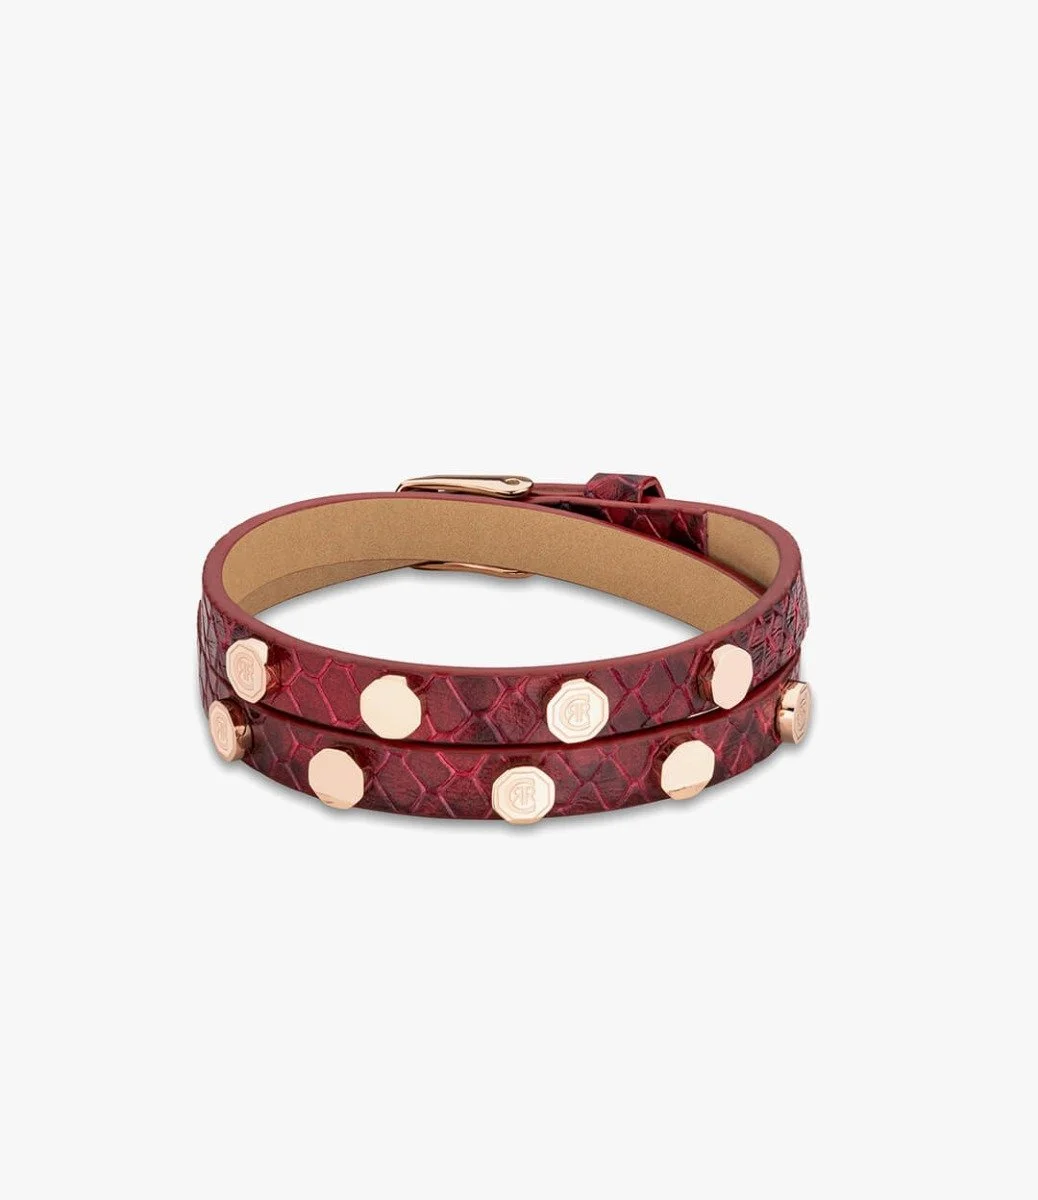 CERRUTI 1881 Stylish Leather Studded Bracelet